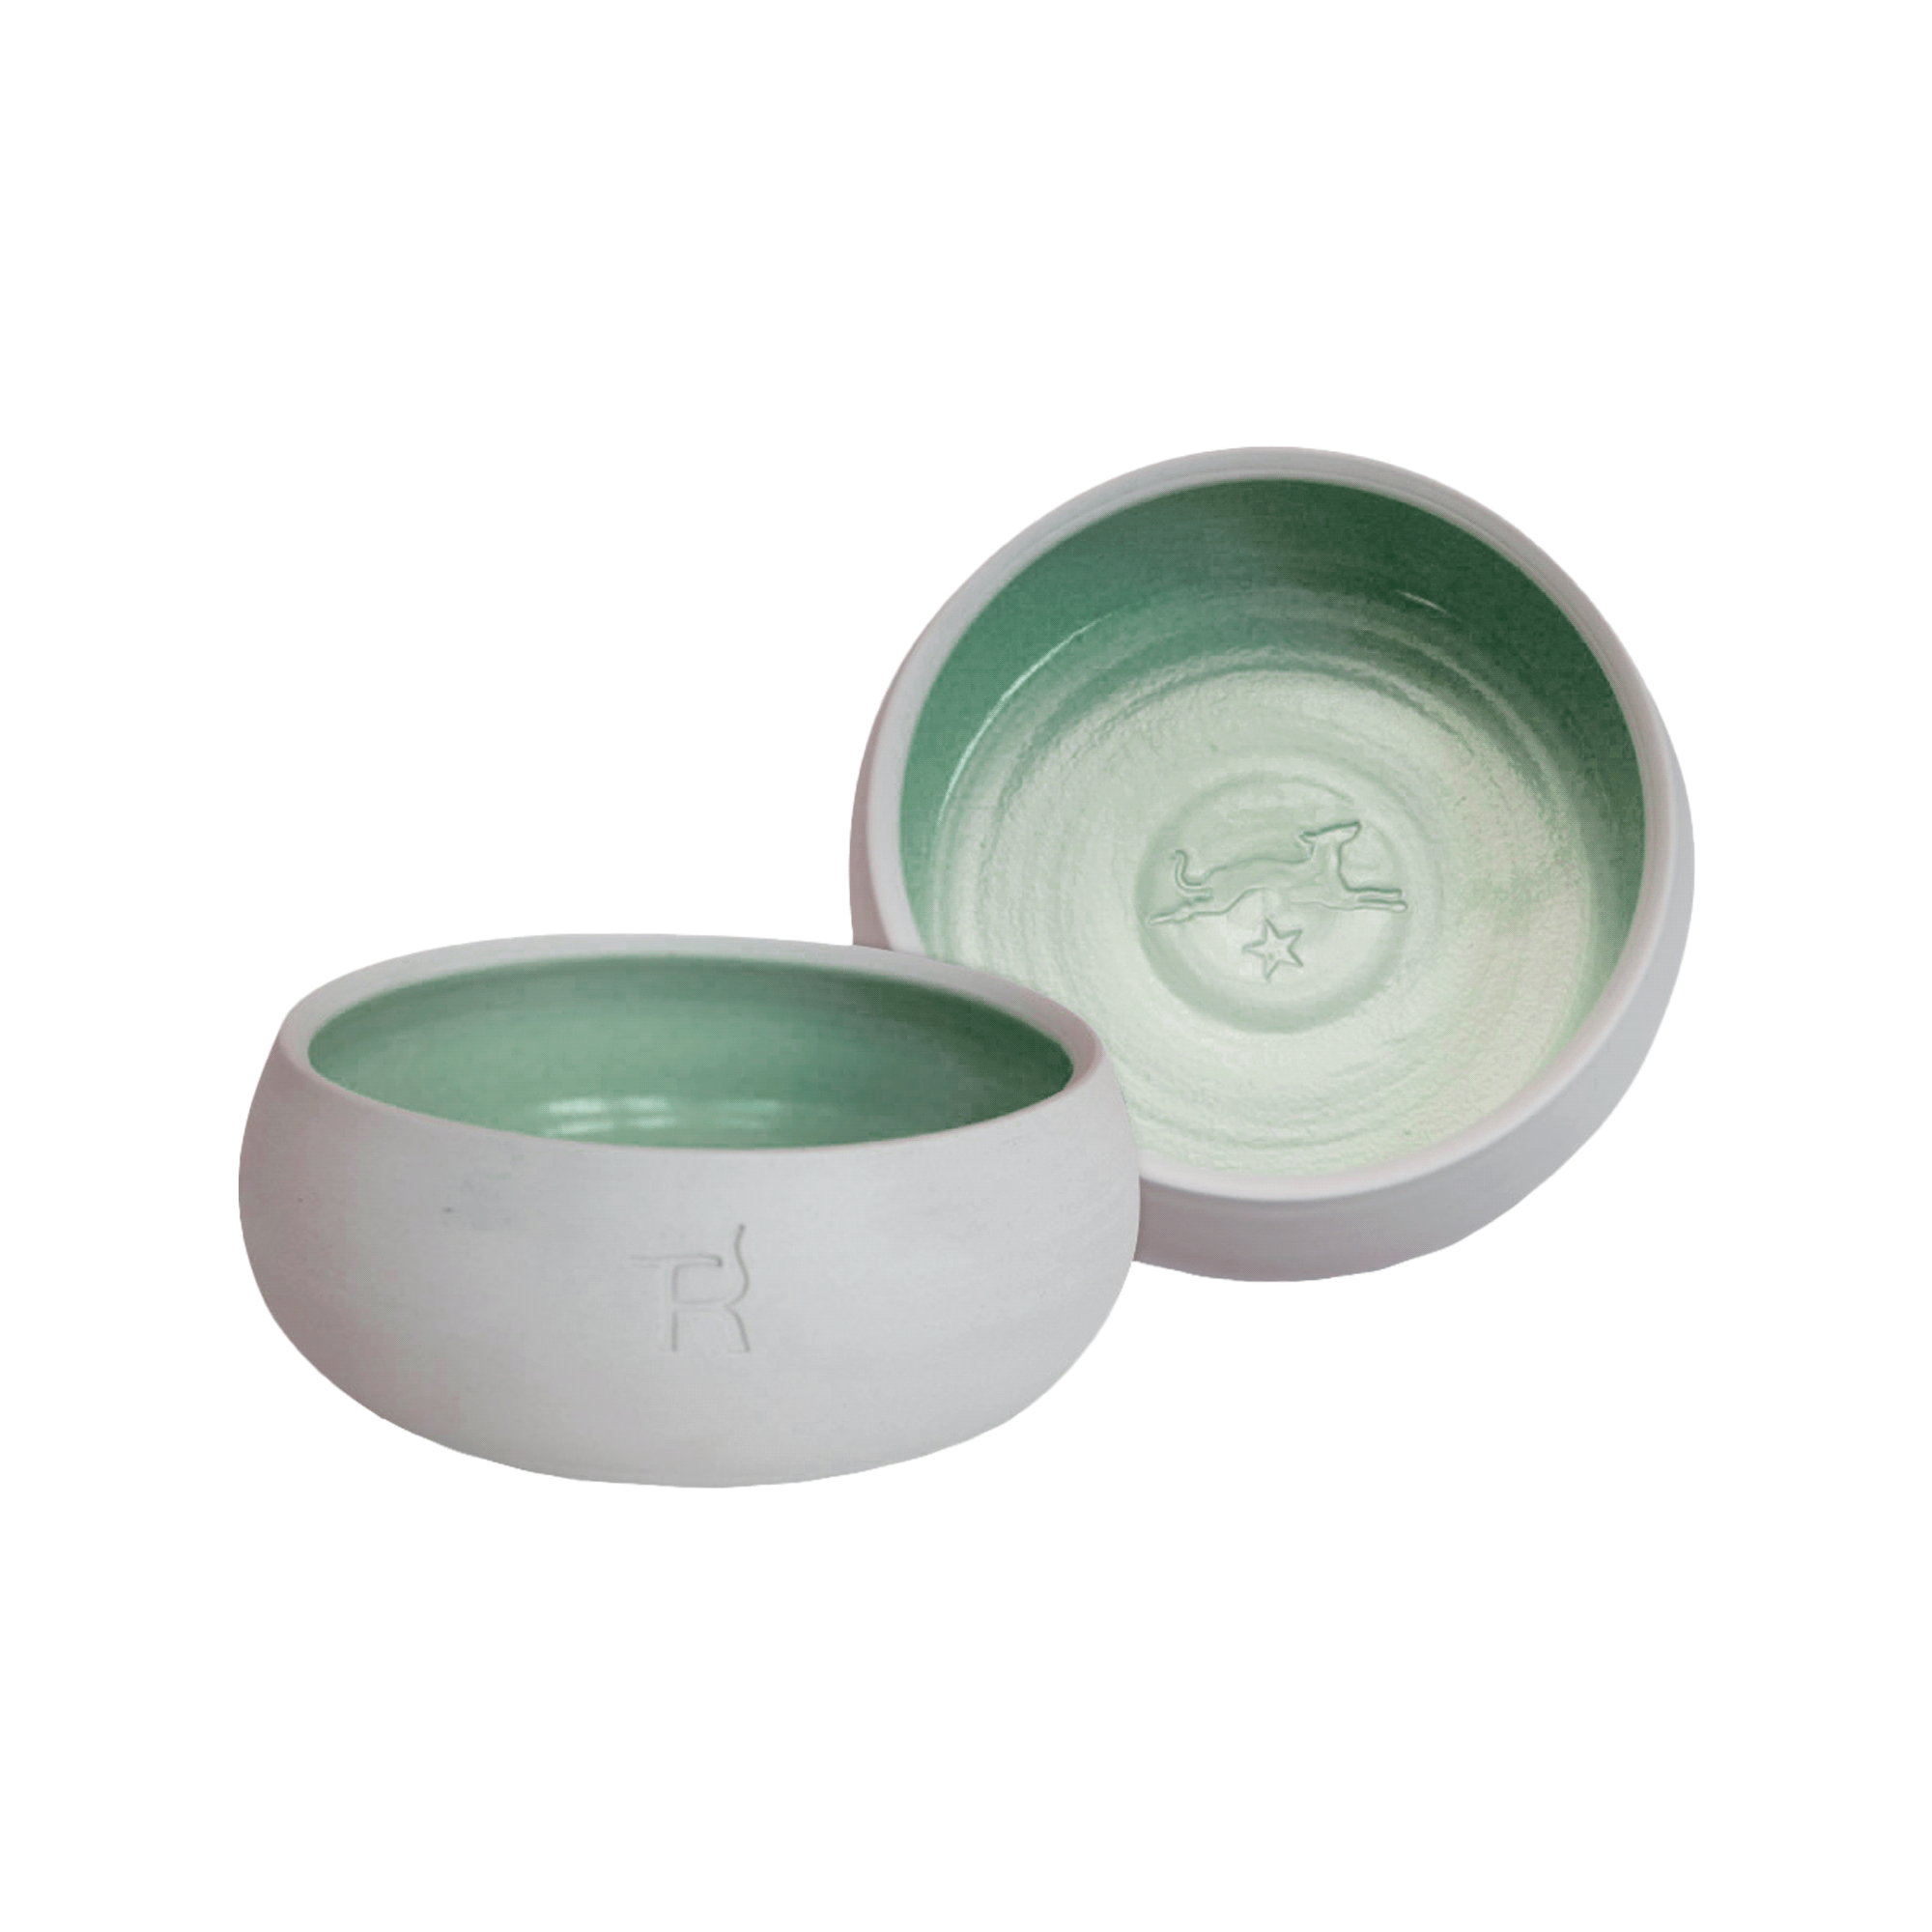 Ceramic cat bowl - natural colour / dark green